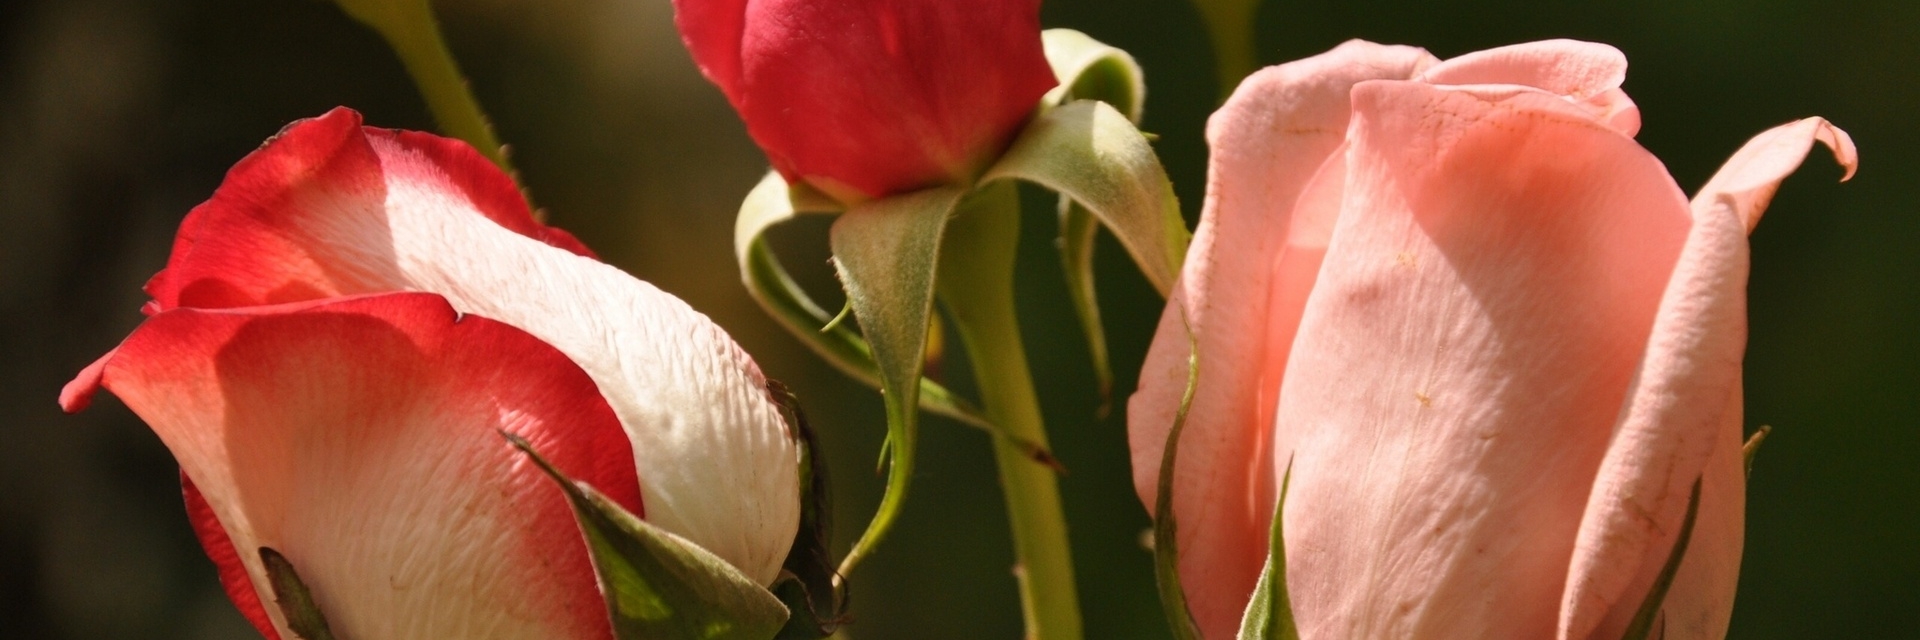 Розы без цензуры. Красный цветок. Розовые бутоны роз фото узкие. Розовые бутоны фото узкие.